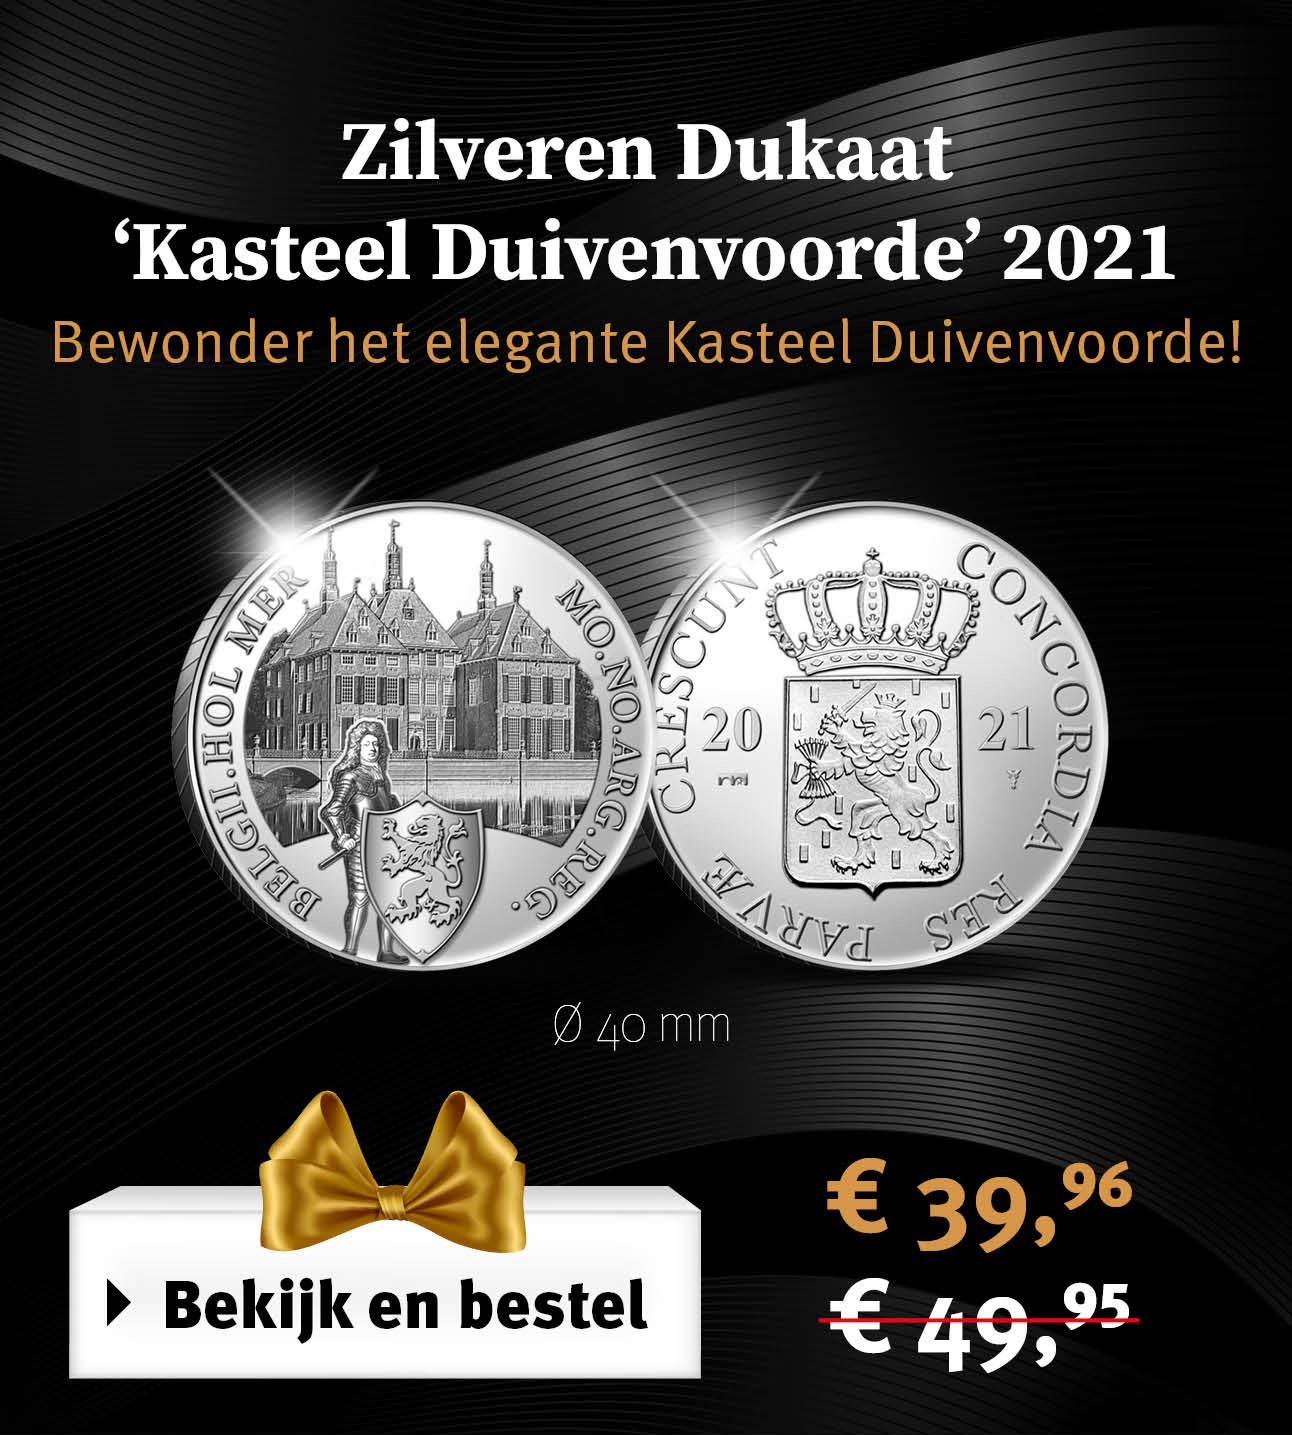 Bekijk en bestel: Zilveren Dukaat ‘Kasteel Duivenvoorde’ 2021